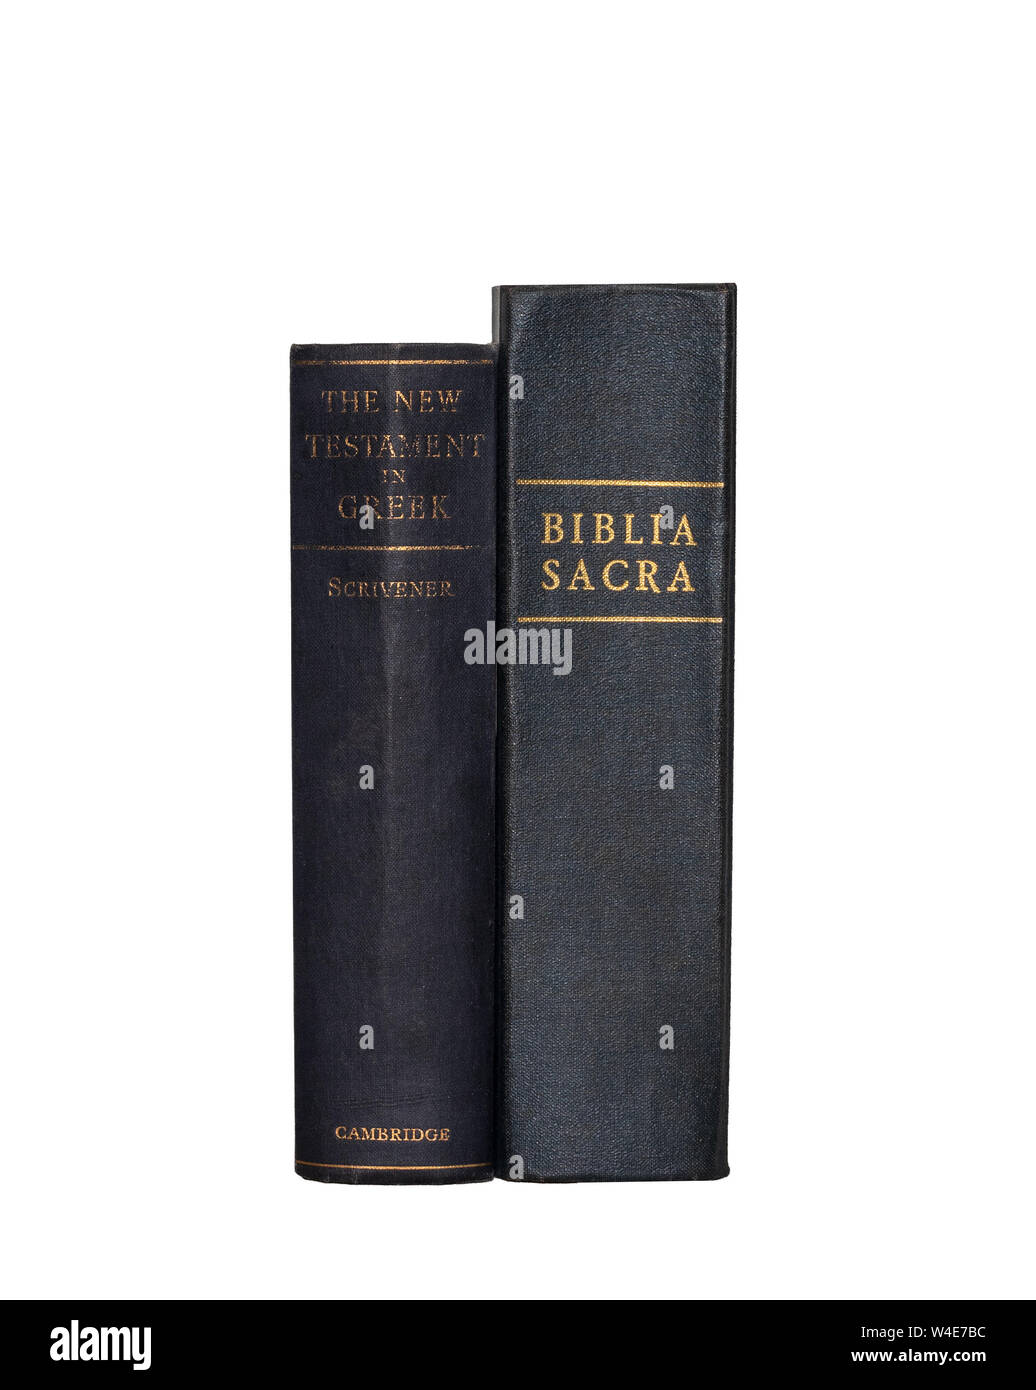 Prenota Immagine: Vulgata latino e greco del Nuovo Testamento, mostrando dorsali, isolato su sfondo bianco Foto Stock